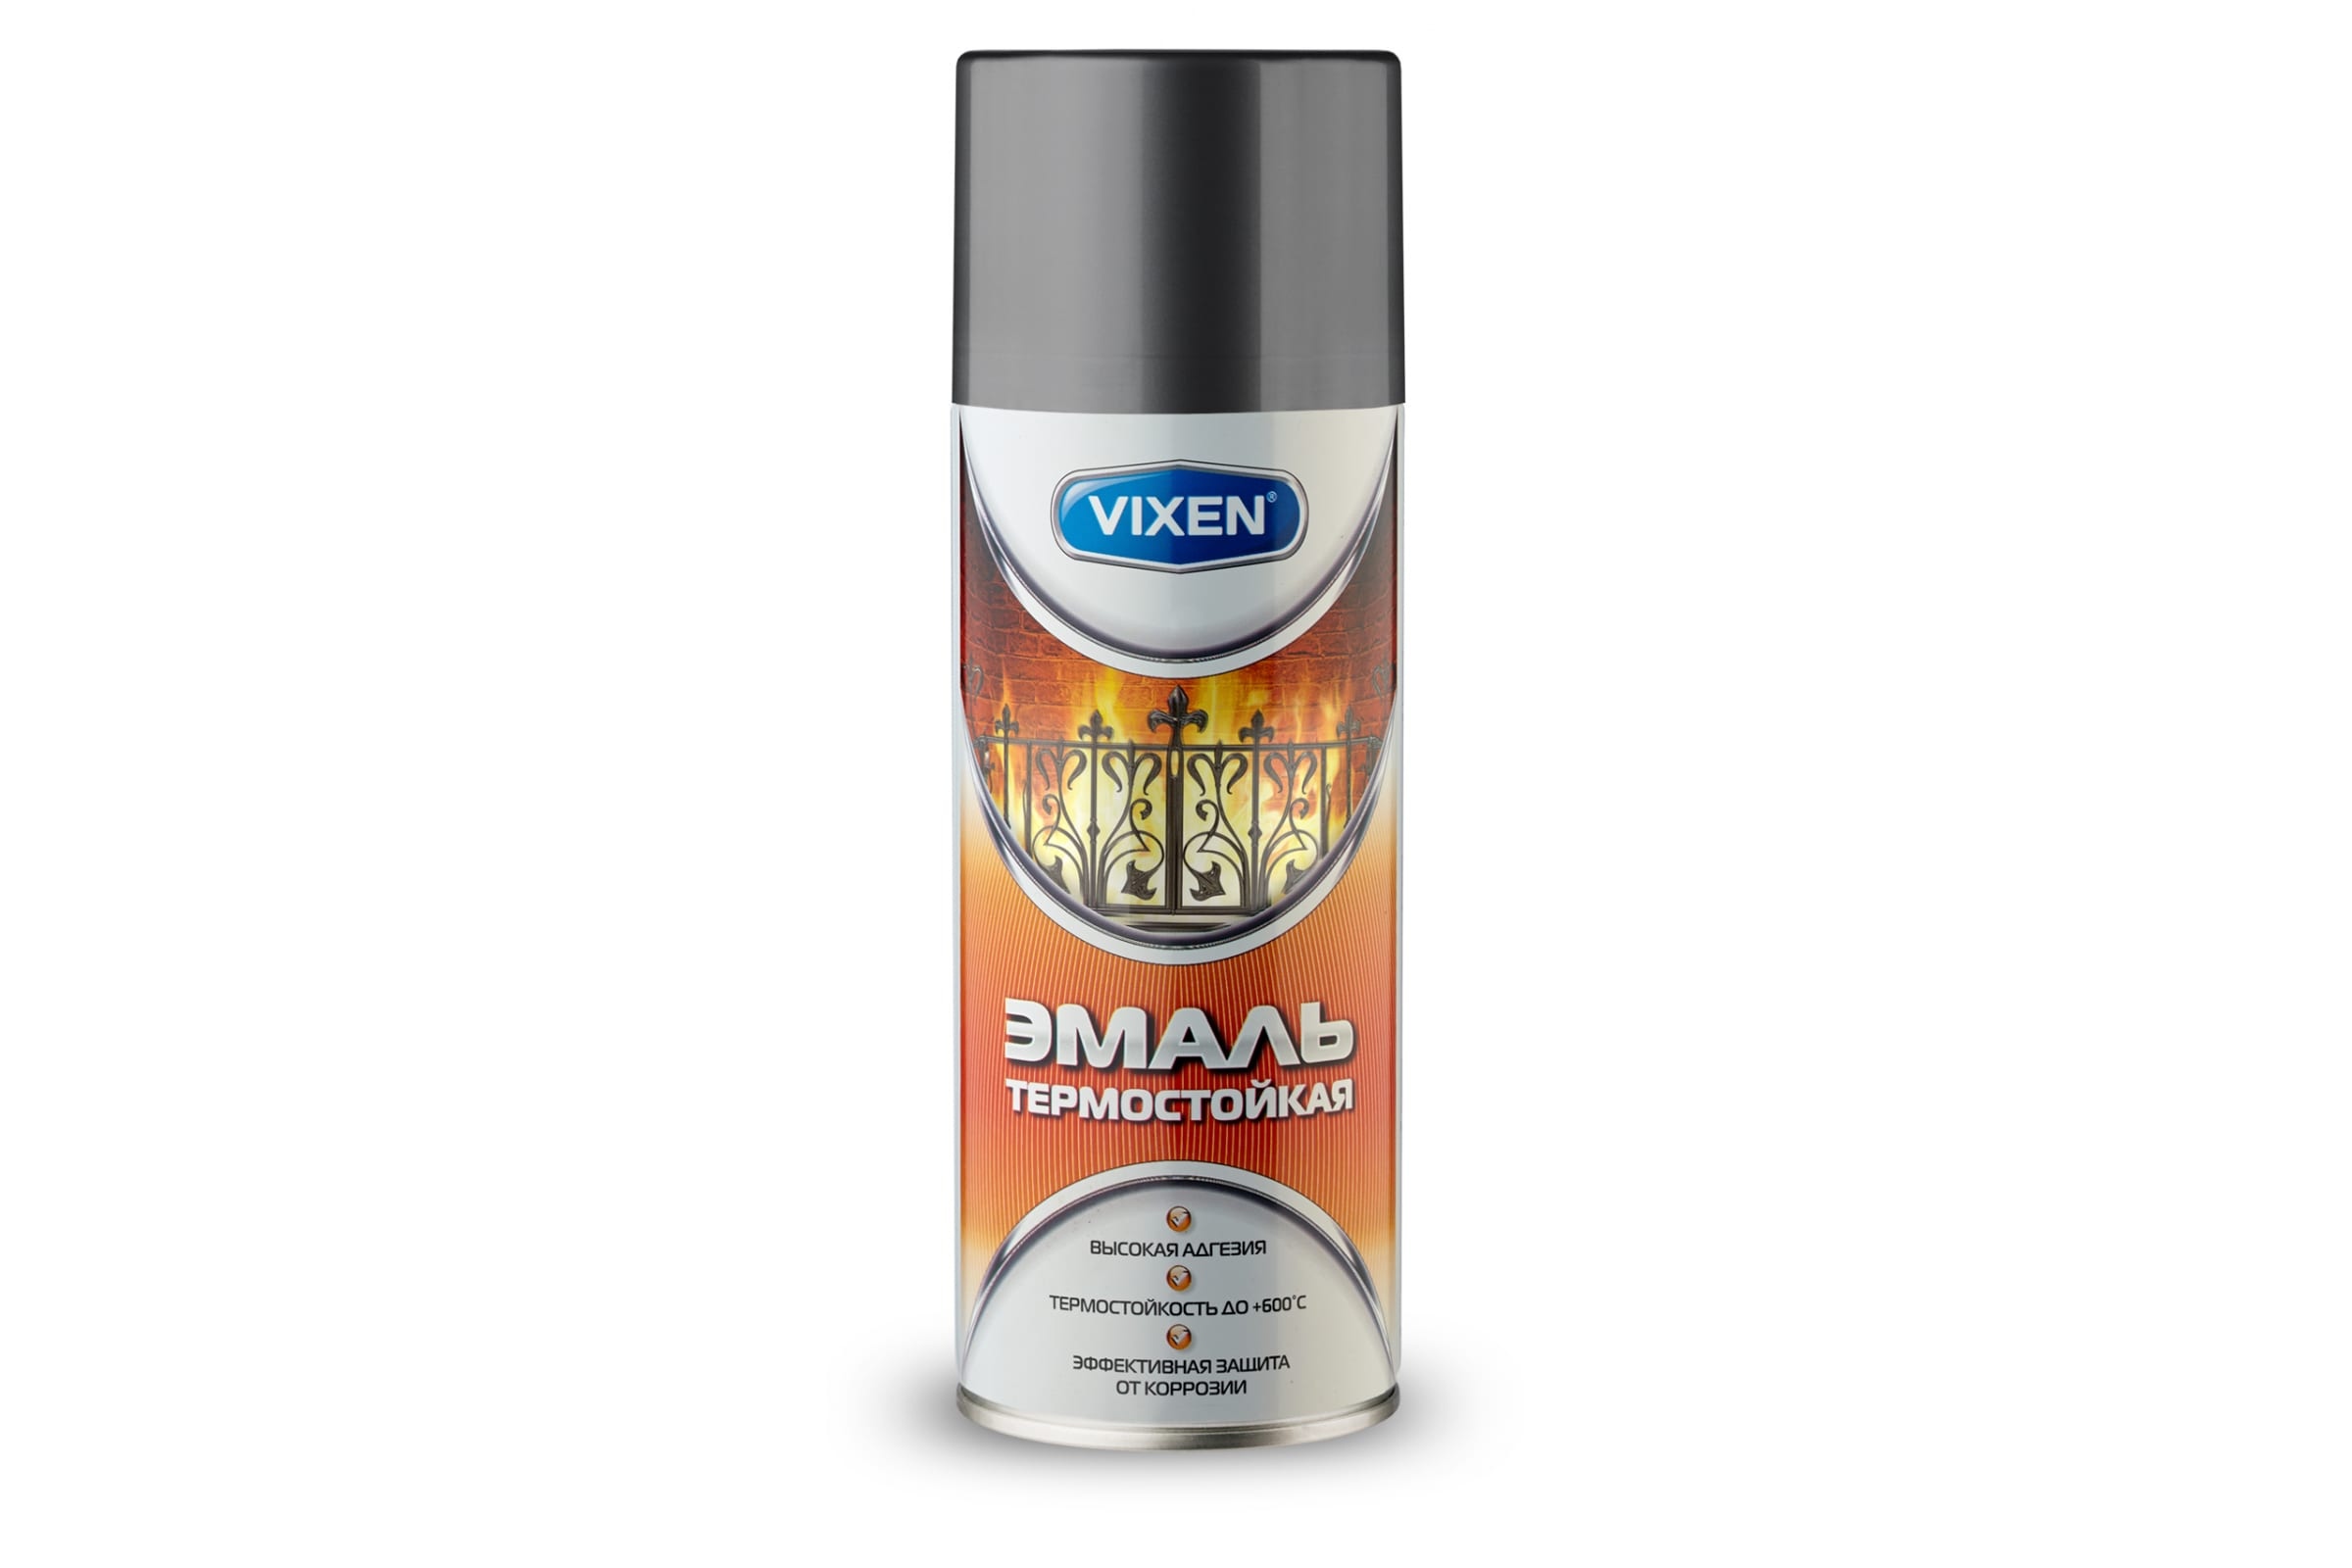 Vixen Эмаль термостойкая графит аэрозоль 12х520 мл. VX-53003